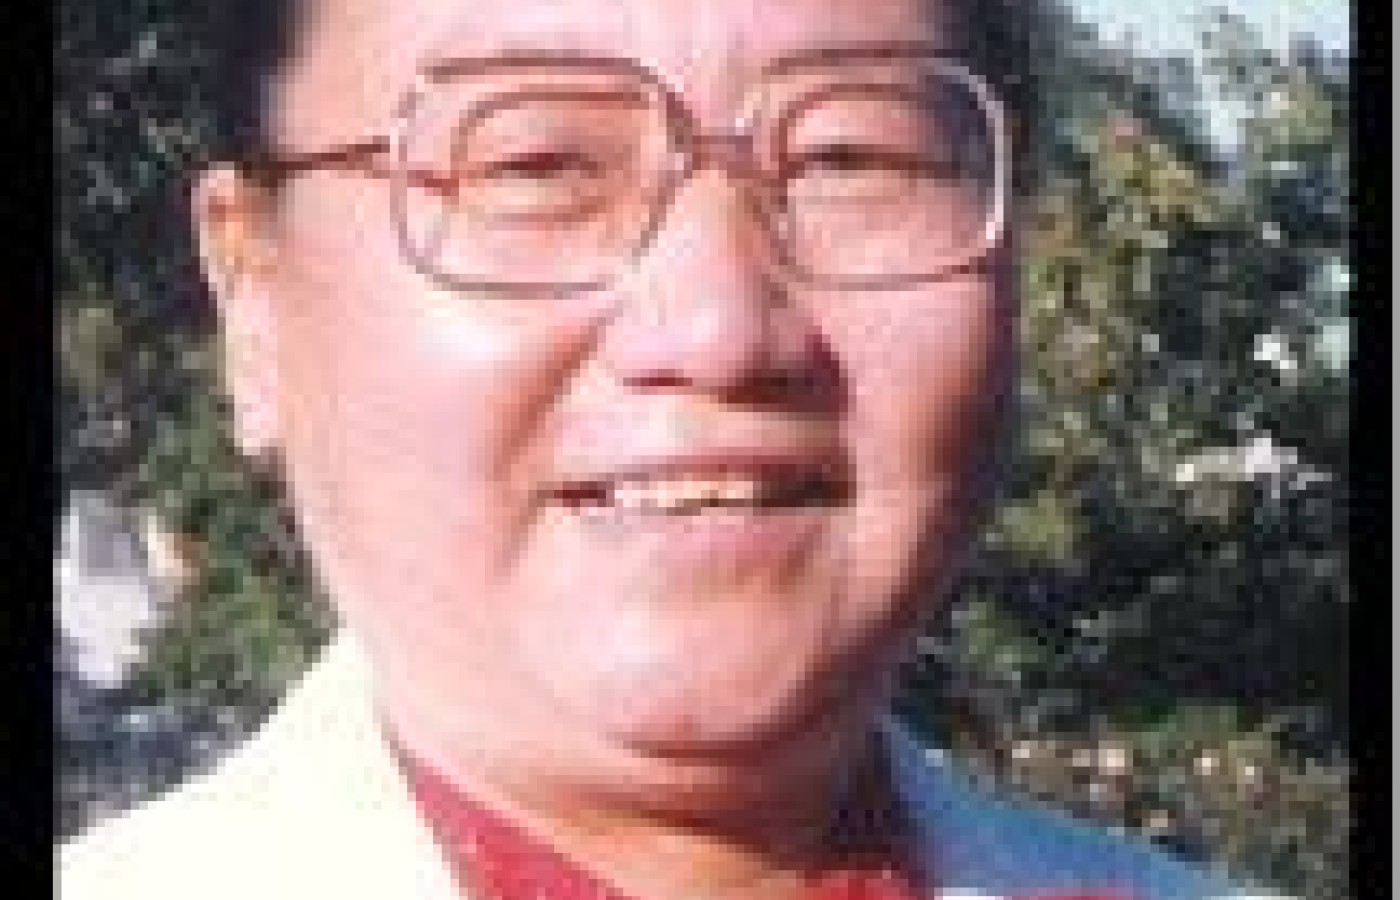 In Memoriam: Dr. Miriam Lee (1926-2009)